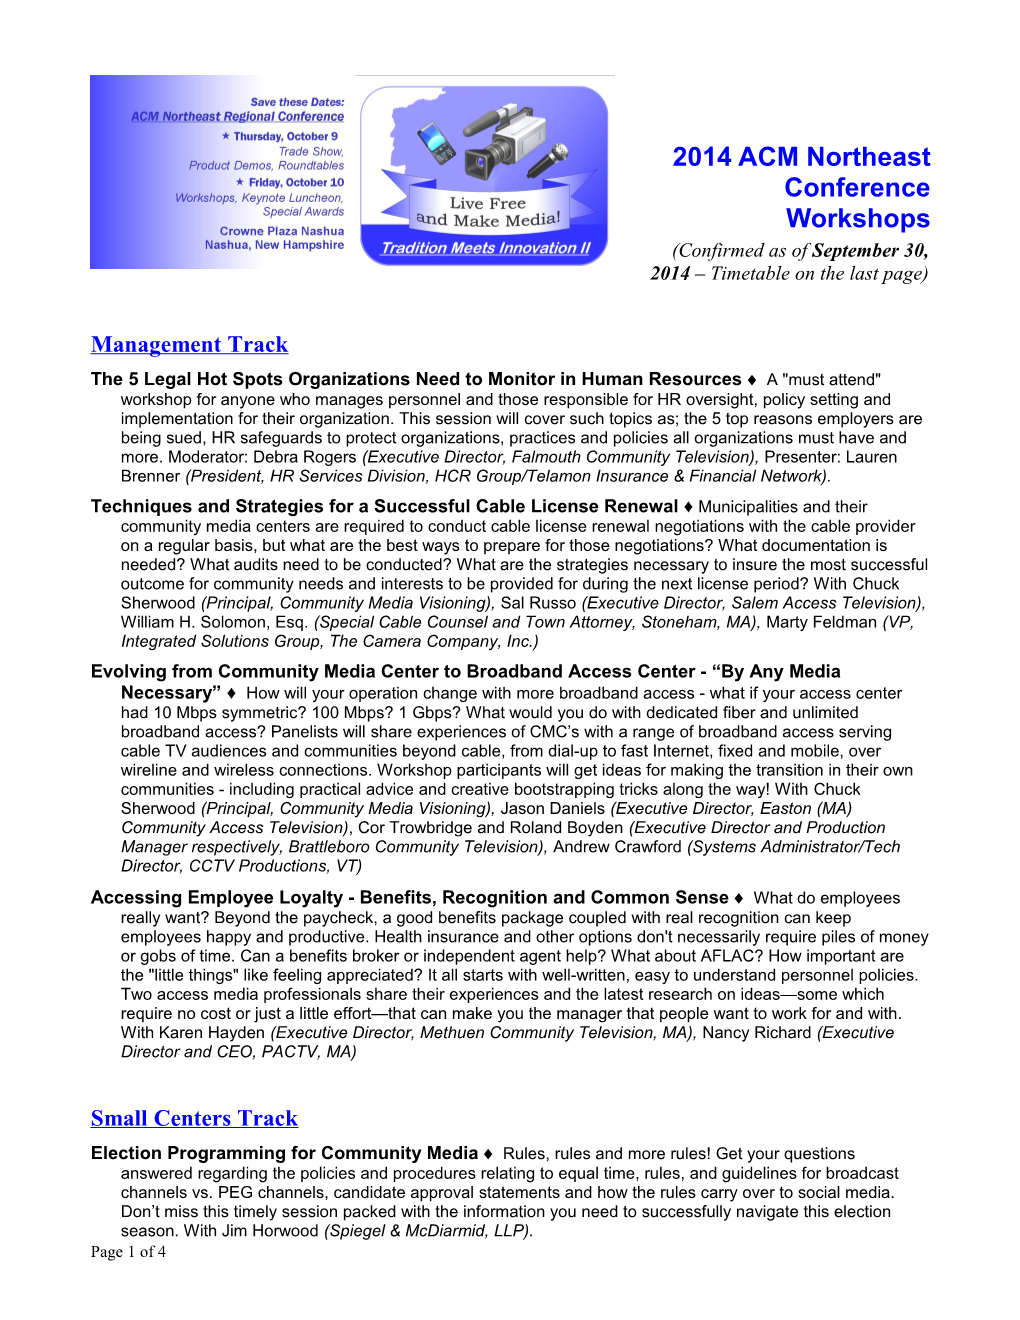 2014 ACM Northeast Conference Workshops